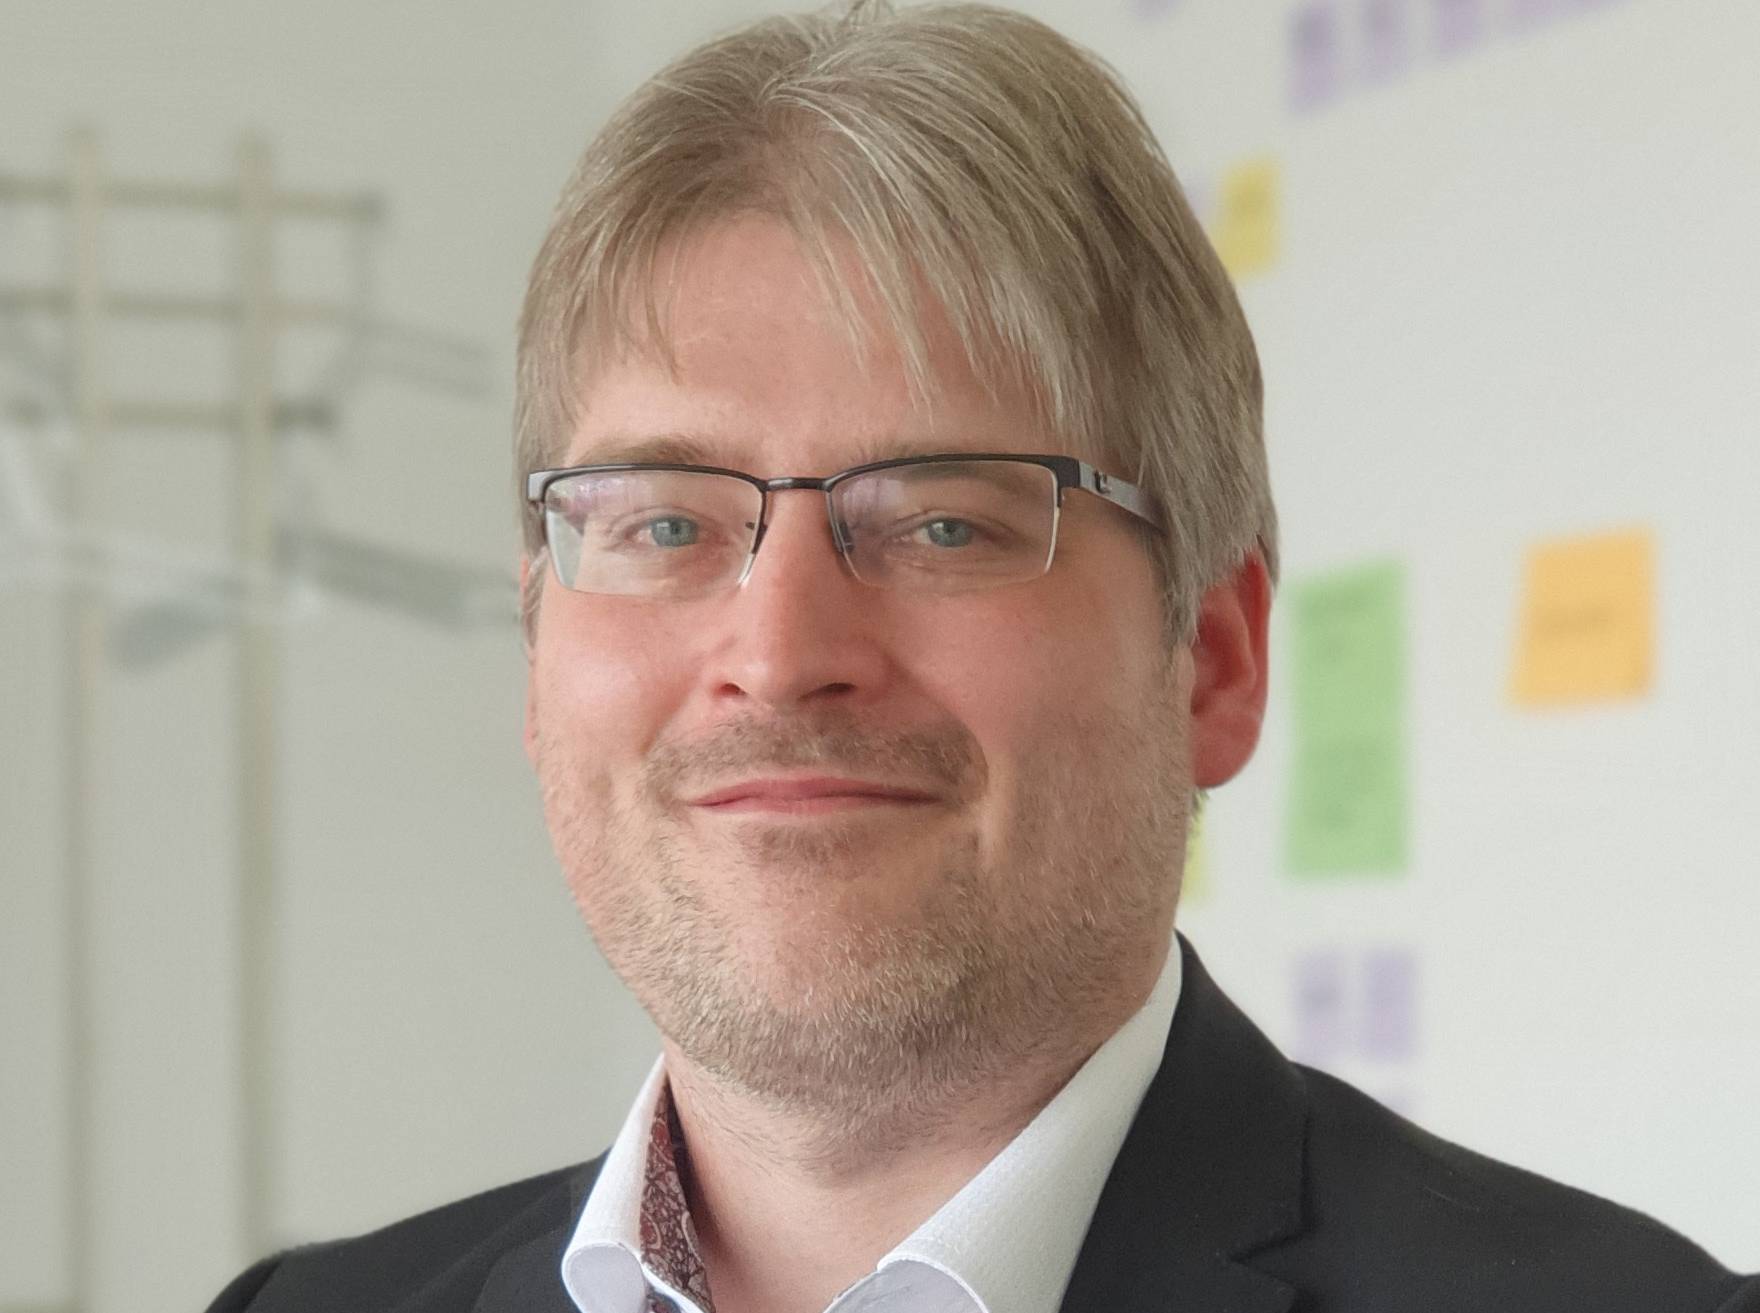  Henrik Dahlmann kandidiert für die gemeinsam antretende Wählergemeischaft für Wuppertal (WfW) und die Freien Wähler (FW) am 13. September für das Amt des Oberbürgermeisters. 